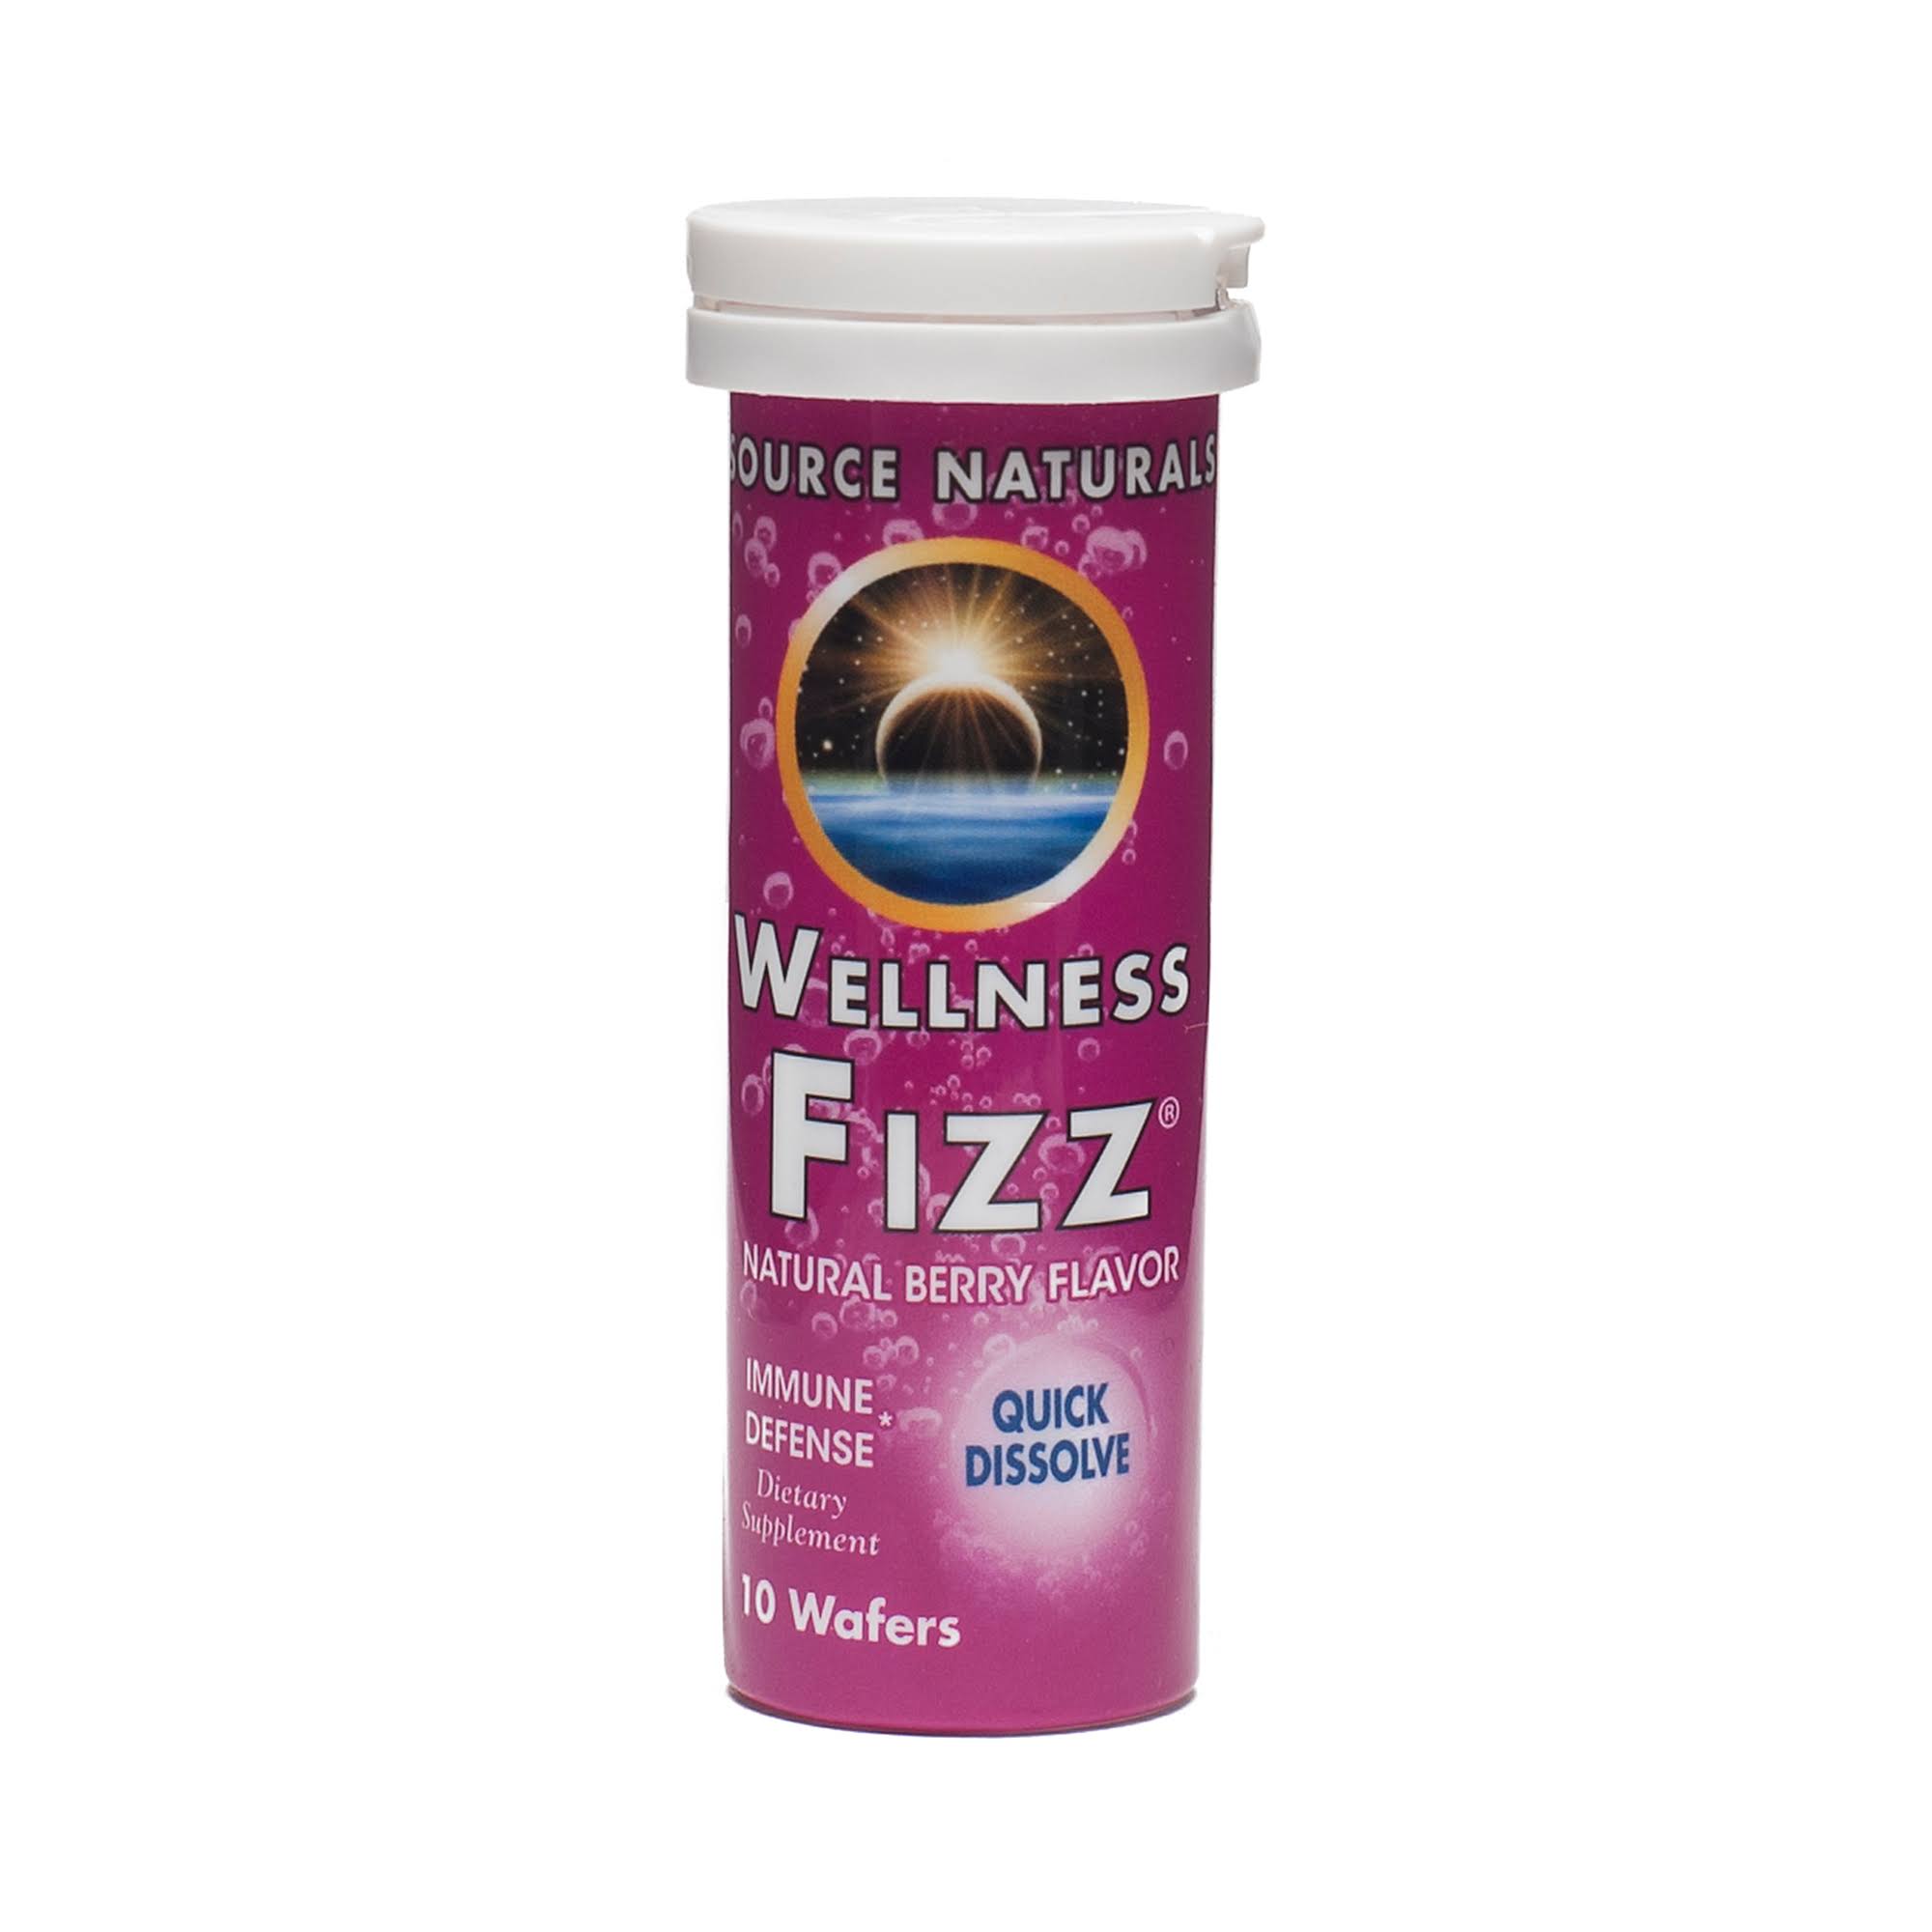 Source Naturals Wellness Fizz - Natural Berry